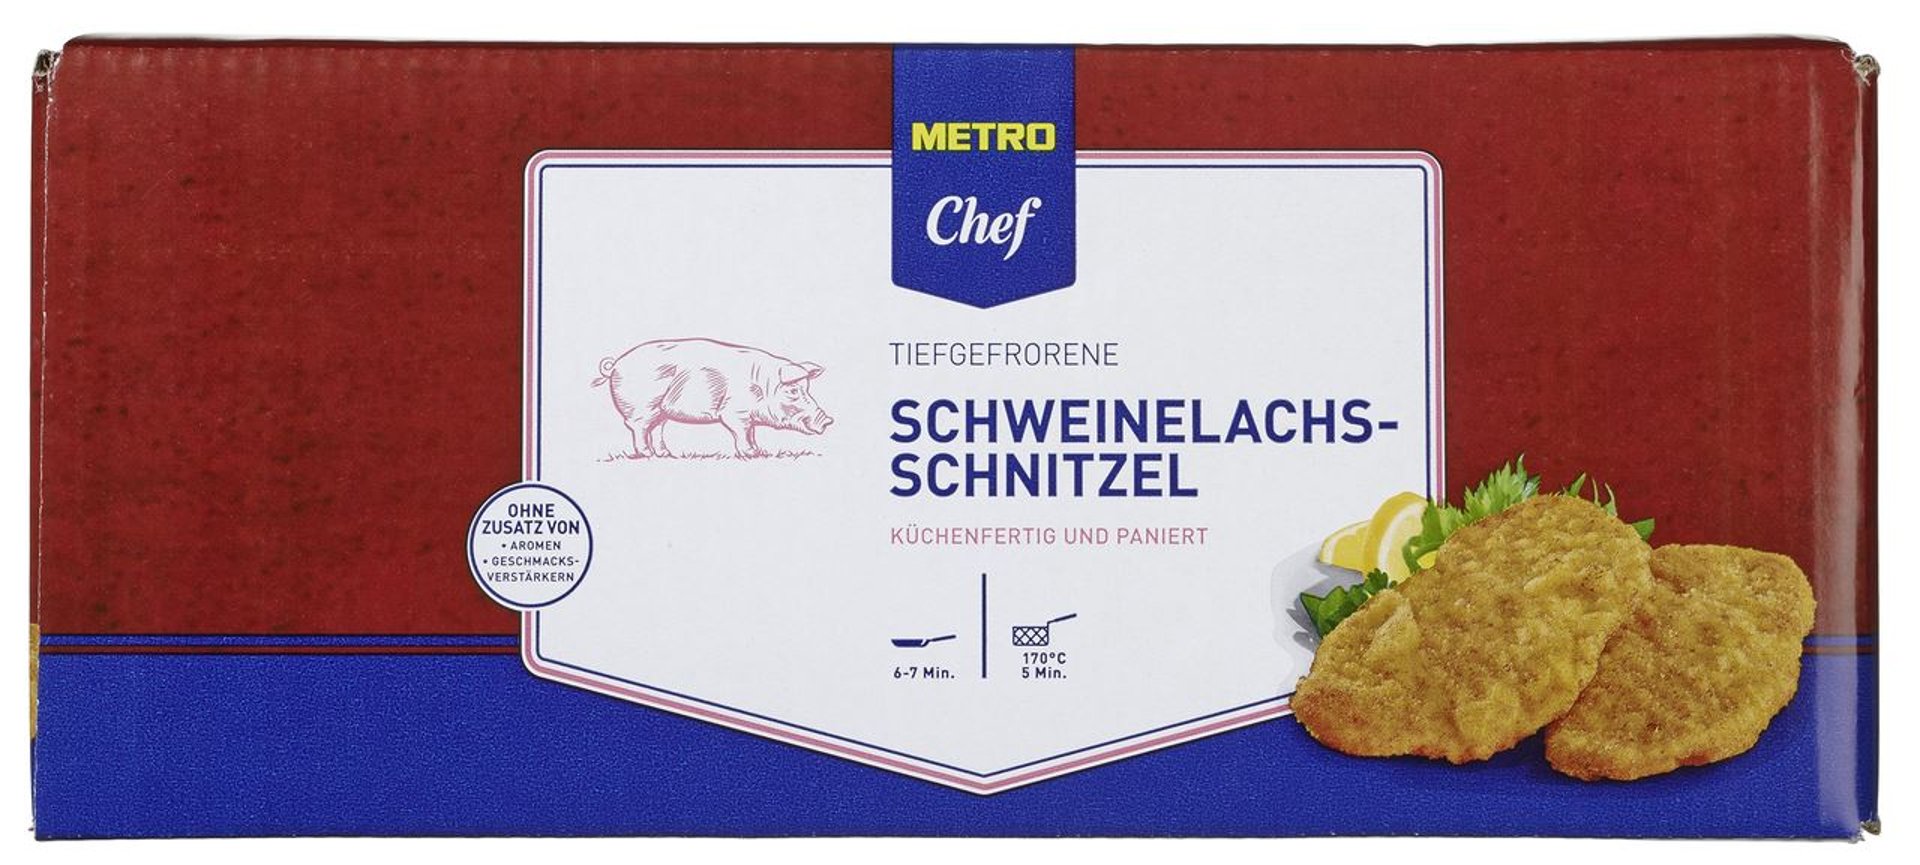 METRO Chef - Schweine Lachsschnitzel 40 200 tiefgefroren, paniert, g kg 8 ca. Stück à - Karton